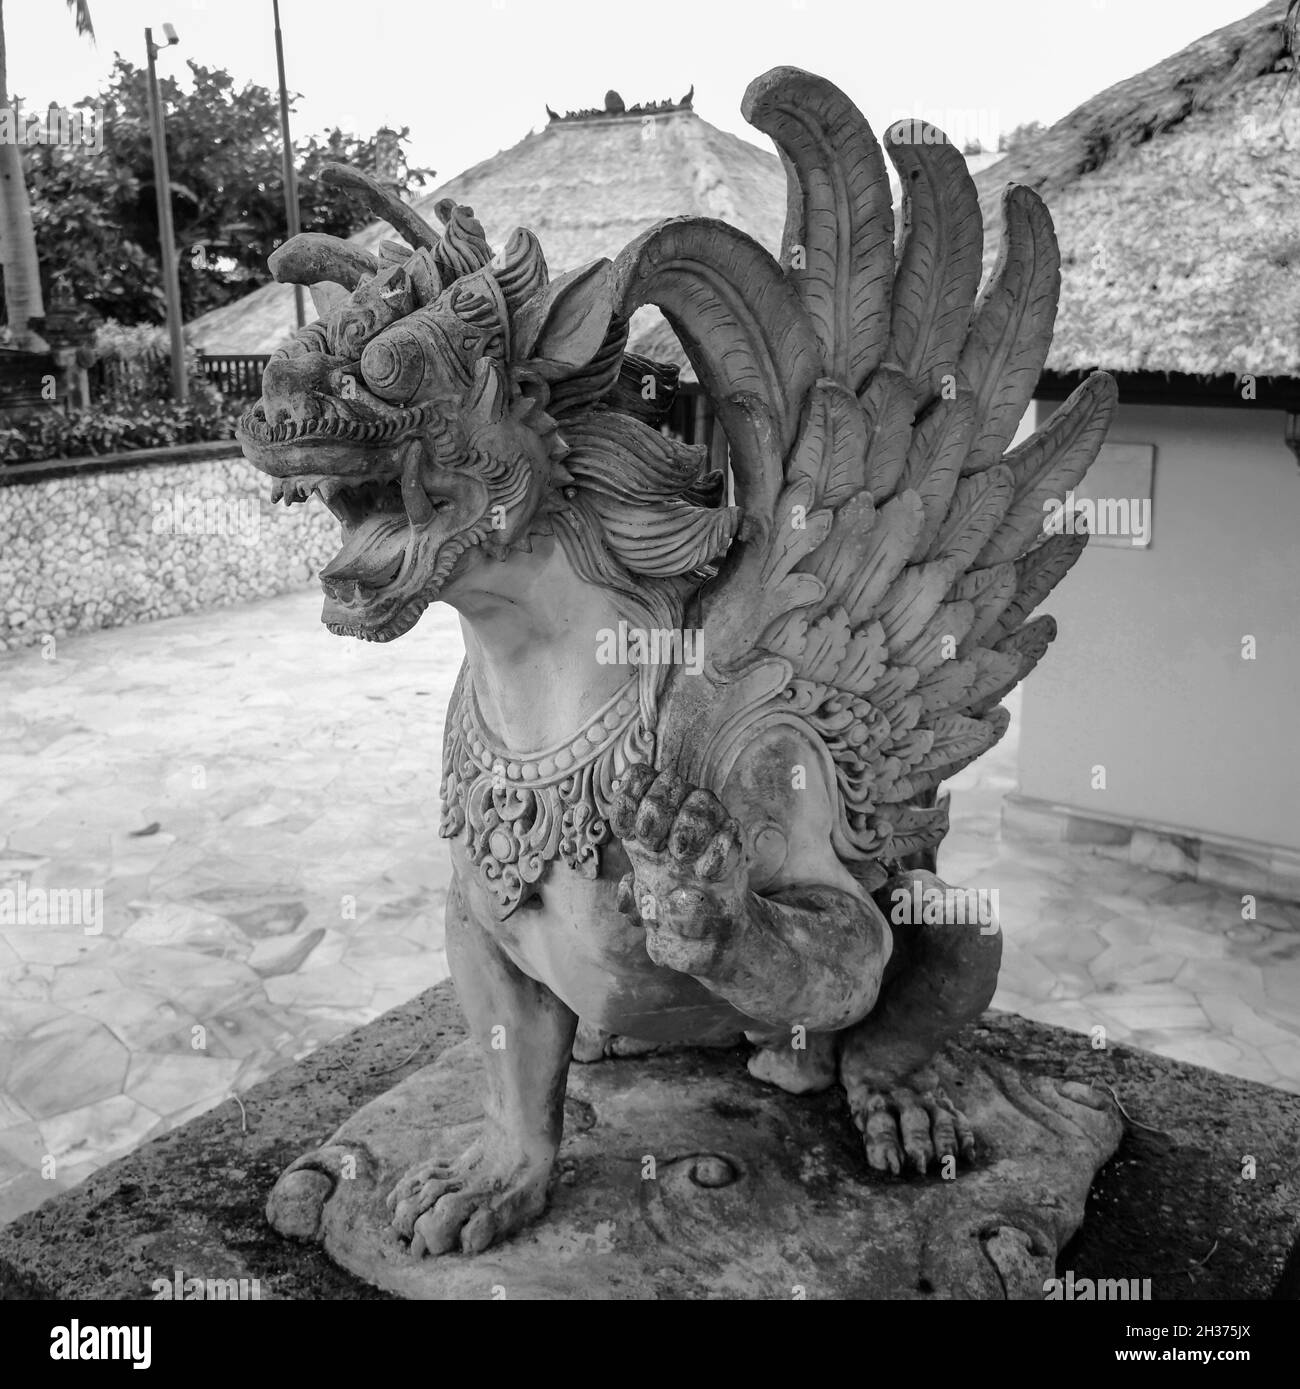 Cerca de la estatua del Espíritu León Alado Singha Barong (Griffin). Criatura mítica en el hinduismo de la cultura balinesa. Para adoración o oración diaria. Foto de stock